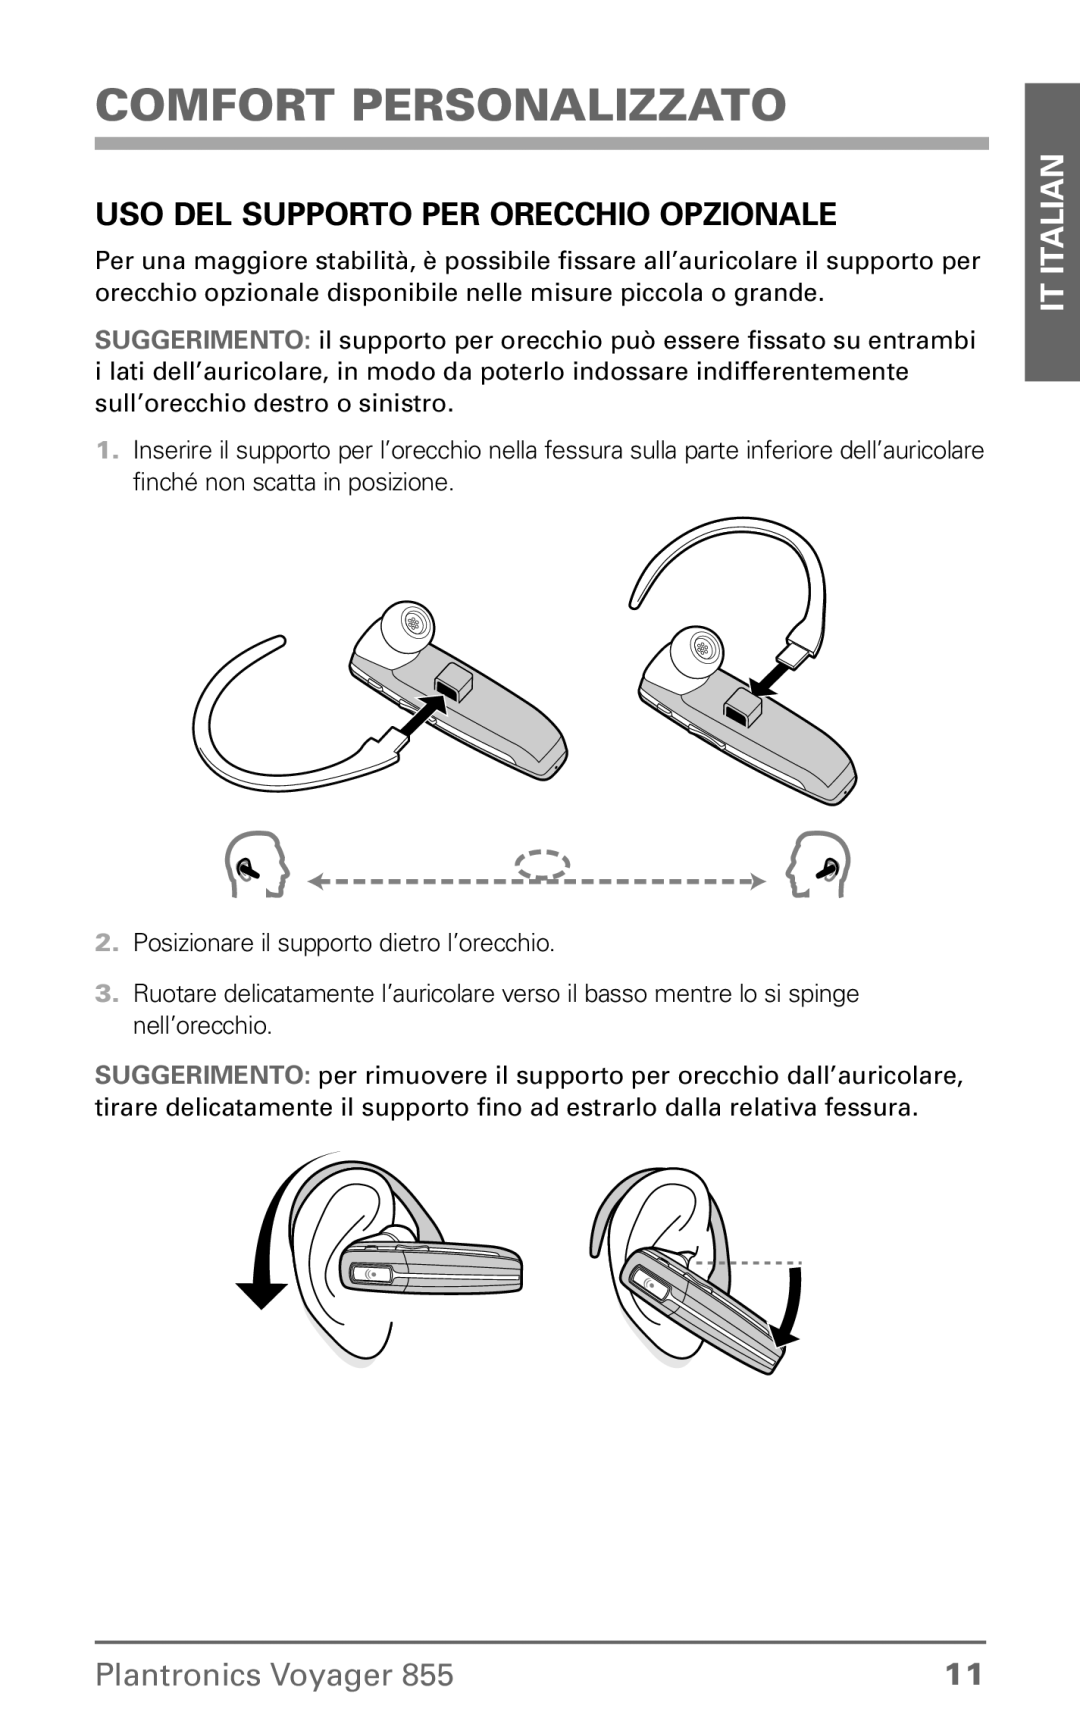 Plantronics Voyager 855 Uso del supporto per orecchio opzionale, Comfort personalizzato, IT Italian, Plantronics Voyager 